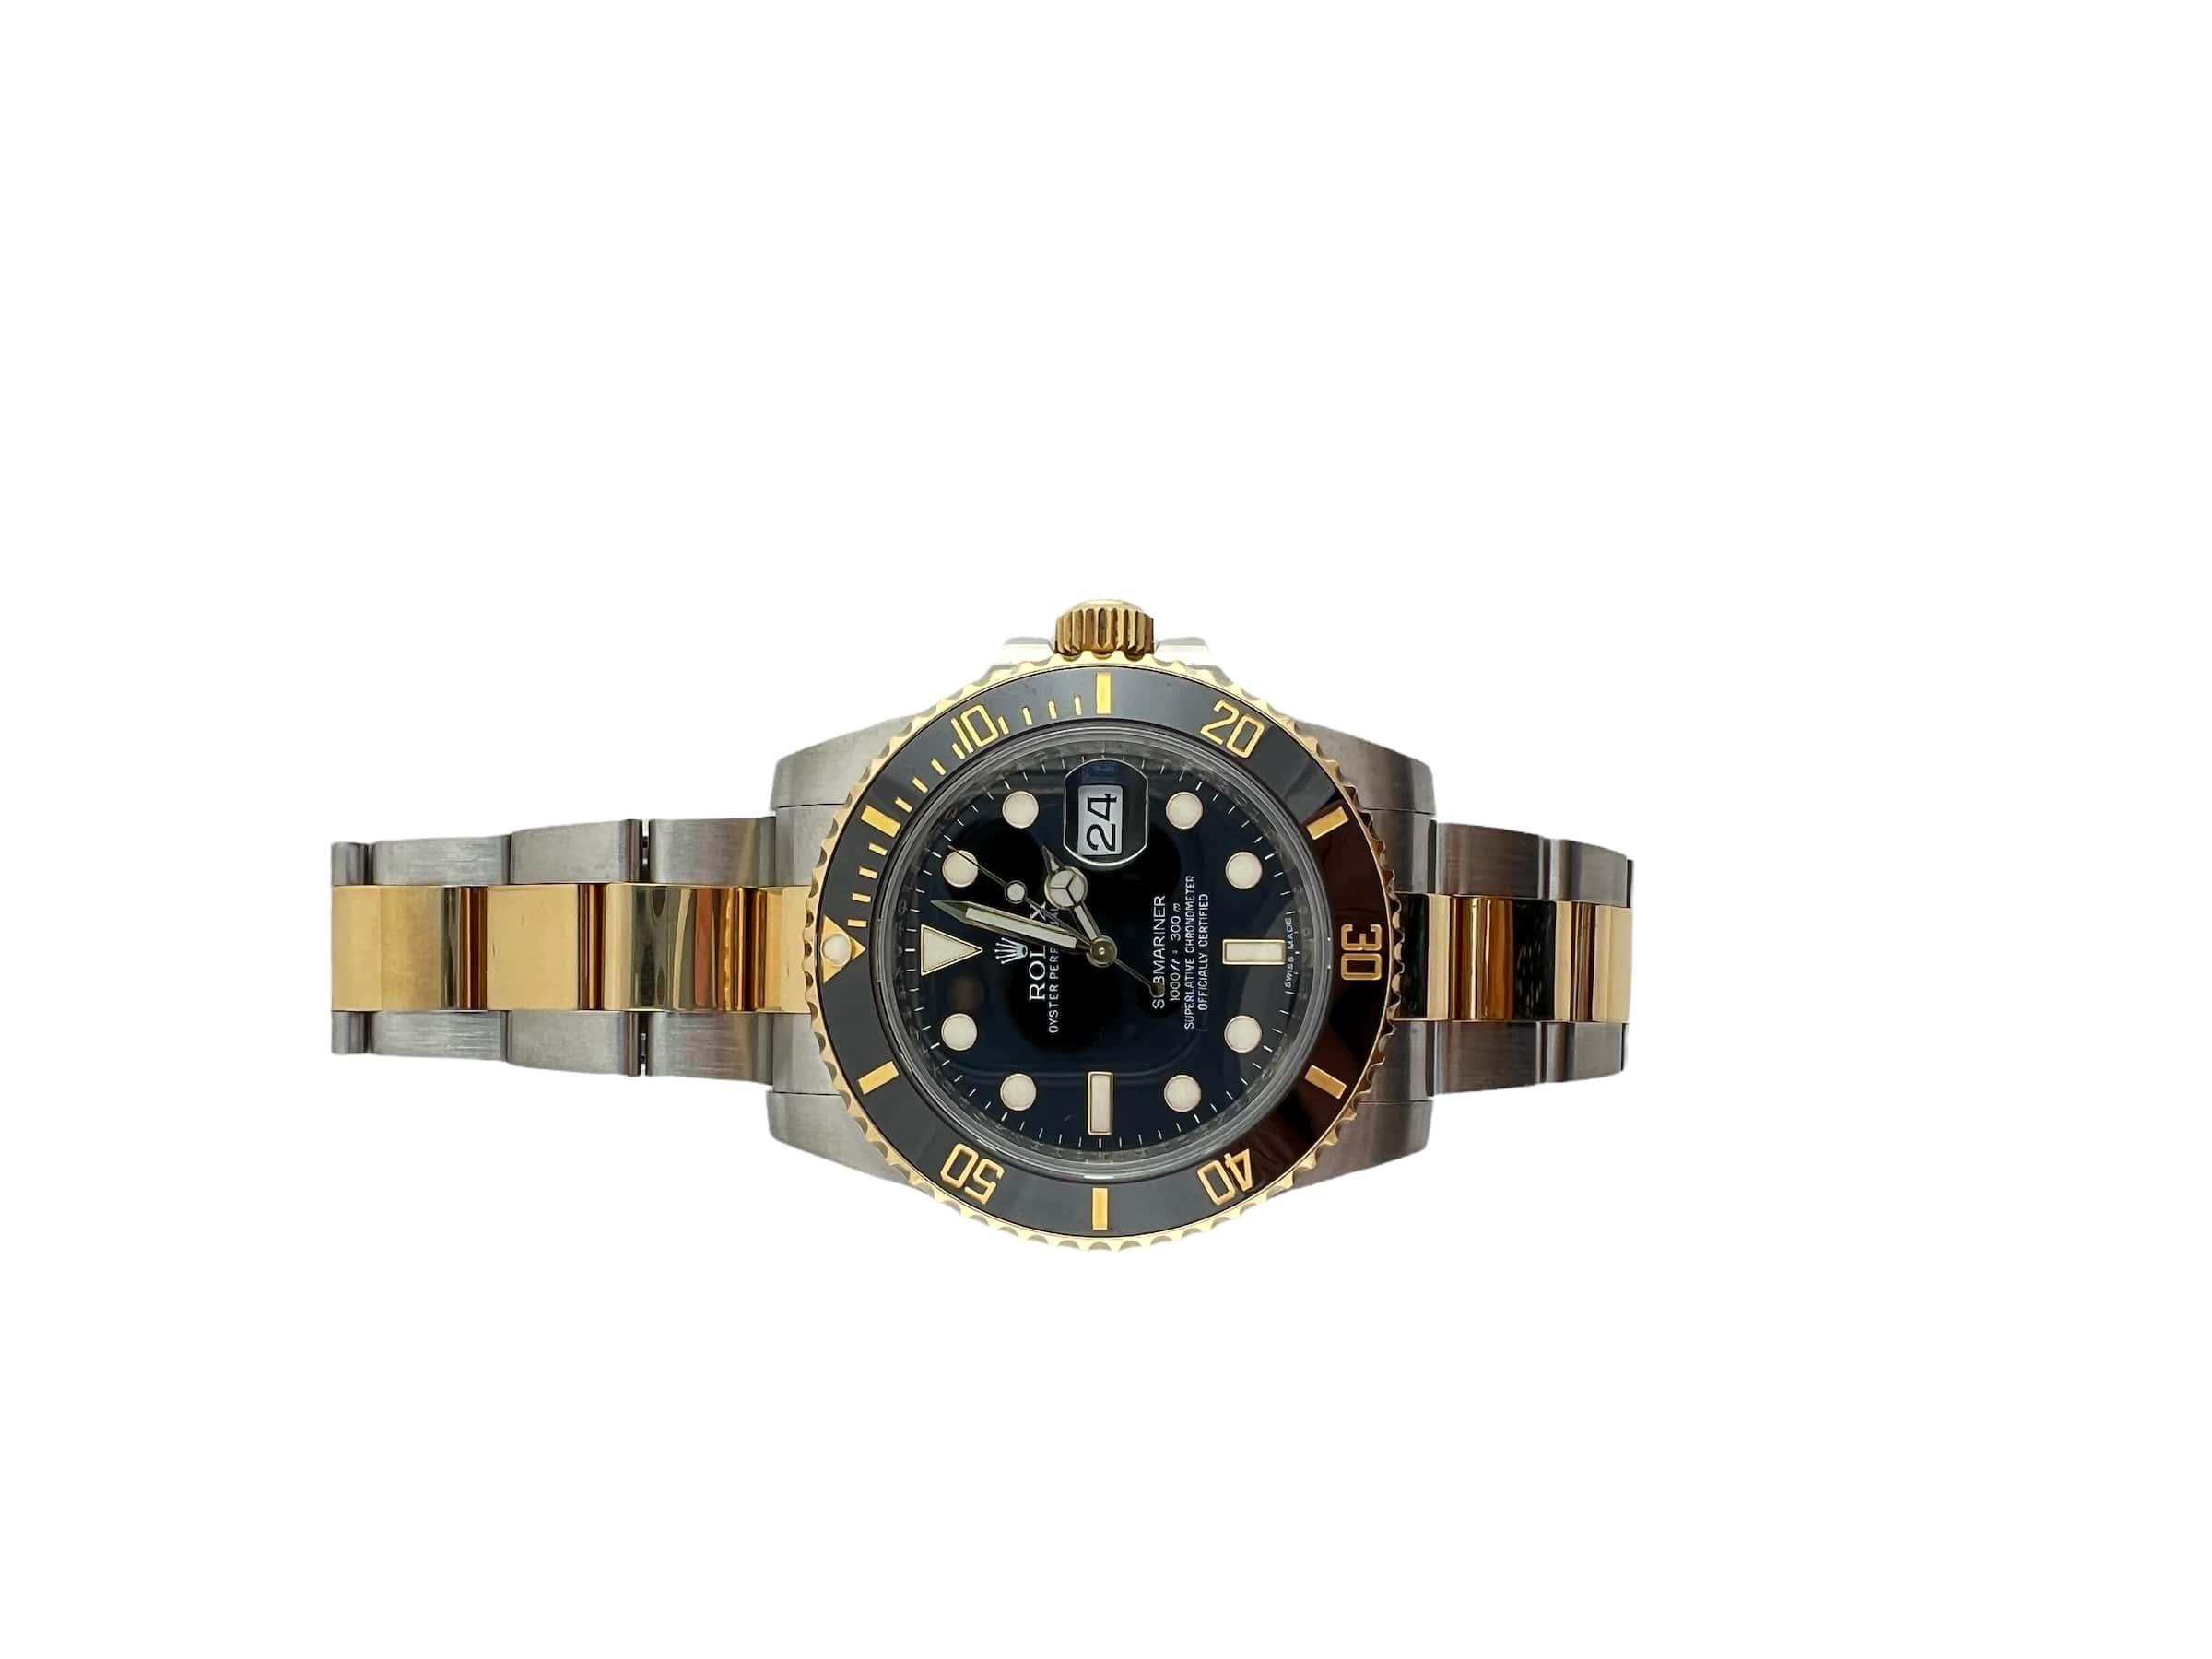  Montre Submariner 2010 Rolex Montre avec cadran noir bicolore 116613LN Boîte/documents Pour hommes 